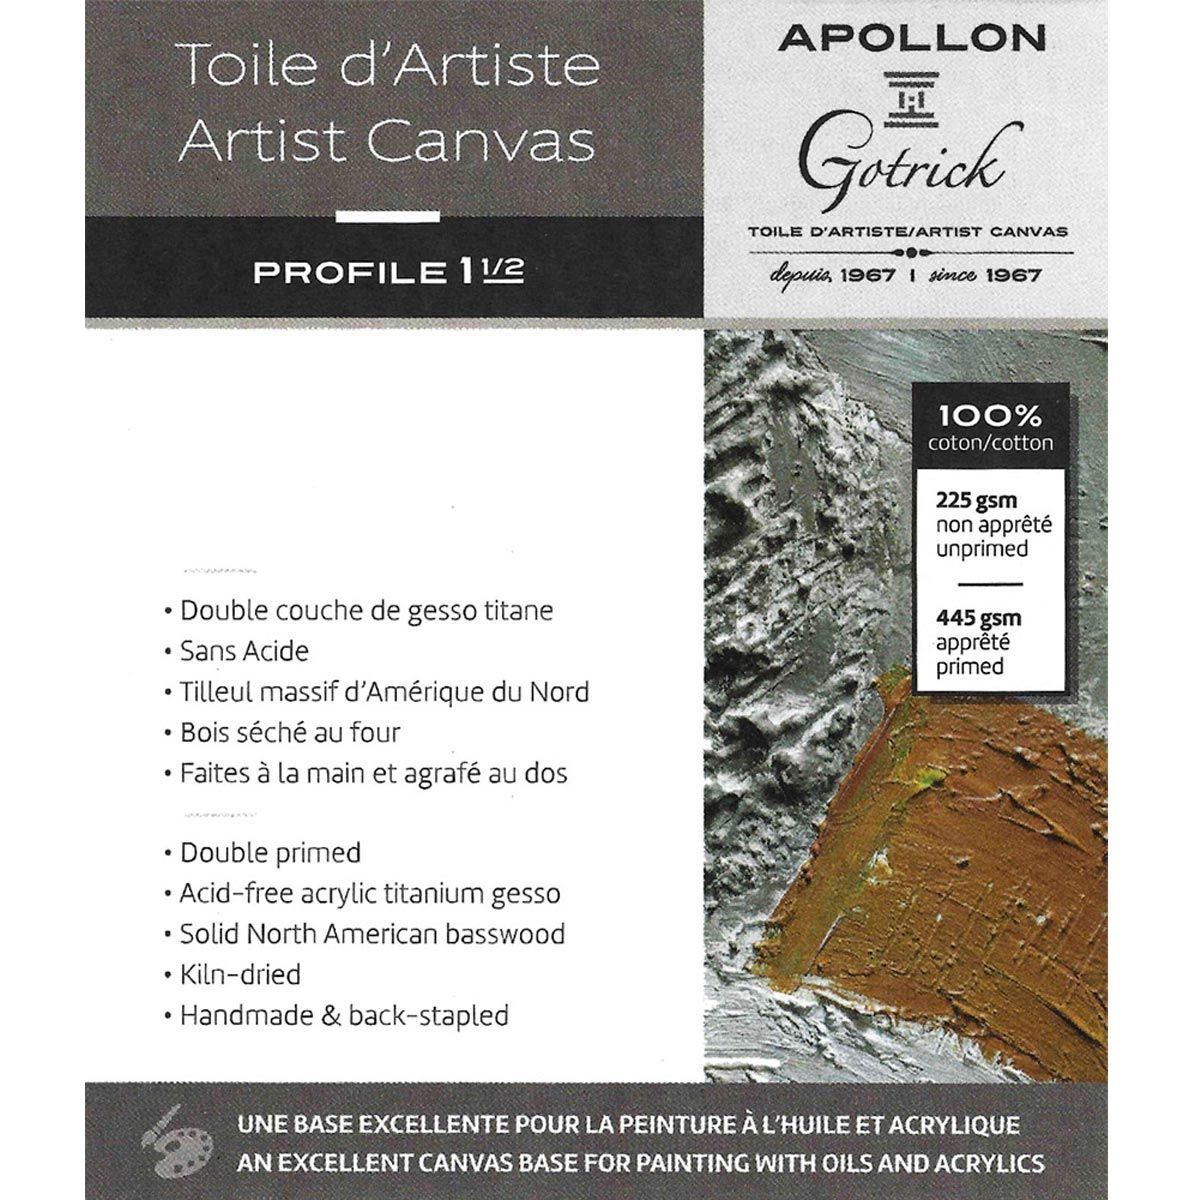 Apollon Gotrick Gallery Artist Canvas Profile 1½" - 30 x 60"